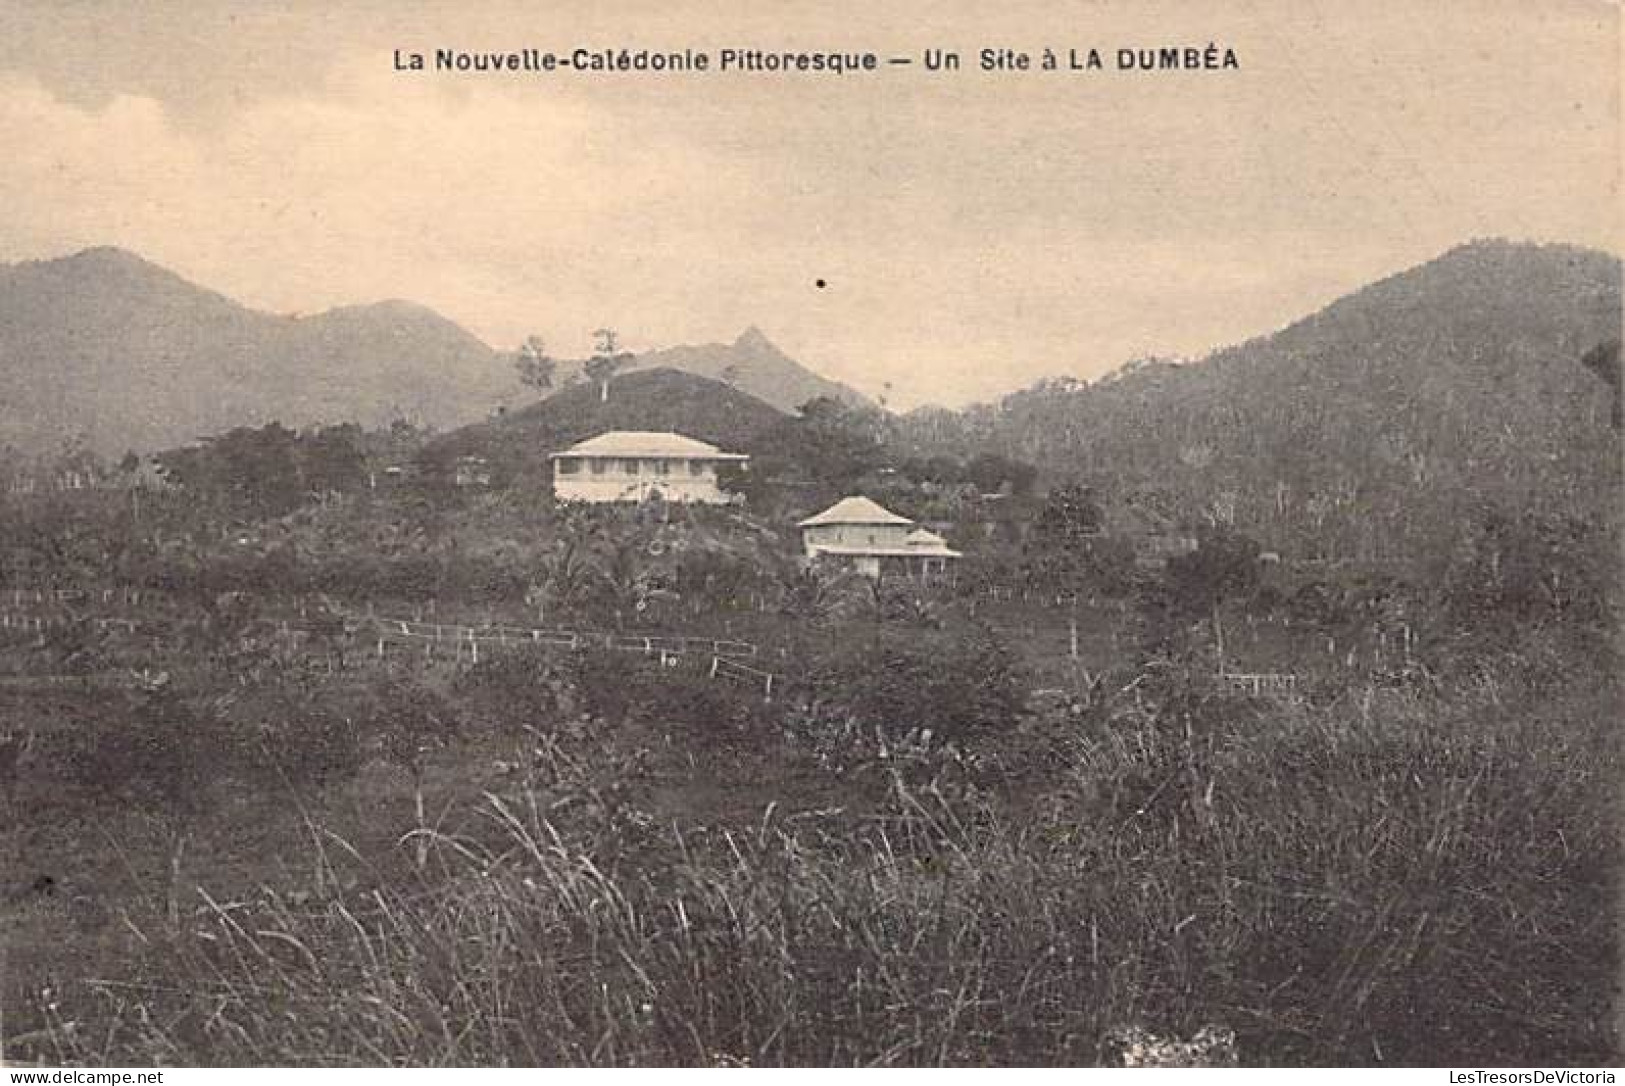 Nouvelle Calédonie Pittoresque - Un Site à La Dumbéa - Carte Postale Ancienne - New Caledonia